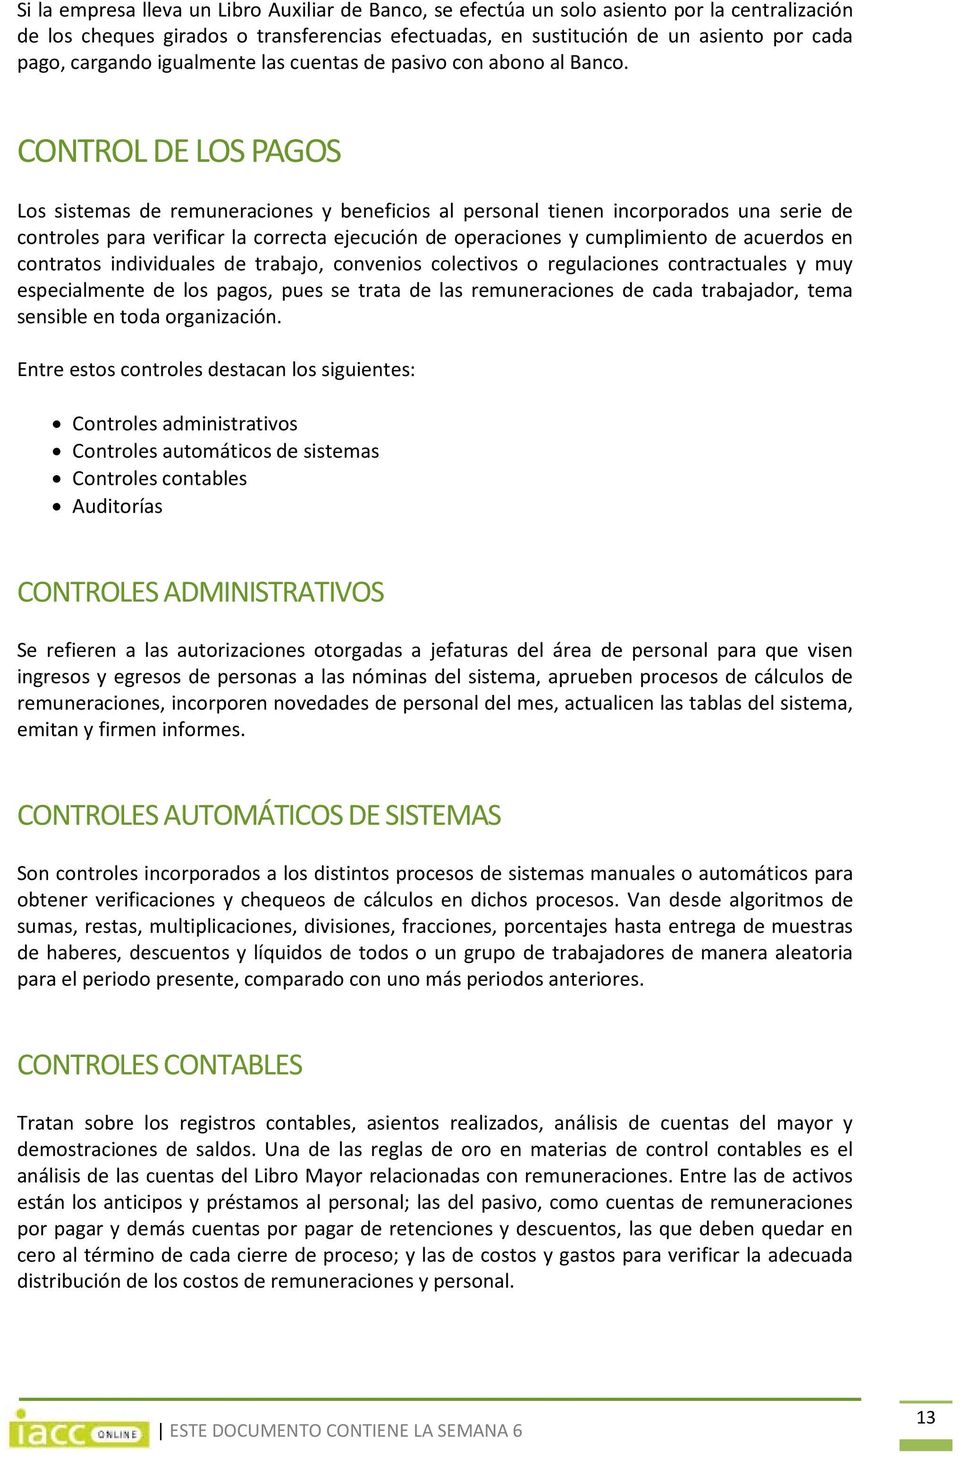 CONTROL DE LOS PAGOS Los sistemas de remuneraciones y beneficios al personal tienen incorporados una serie de controles para verificar la correcta ejecución de operaciones y cumplimiento de acuerdos